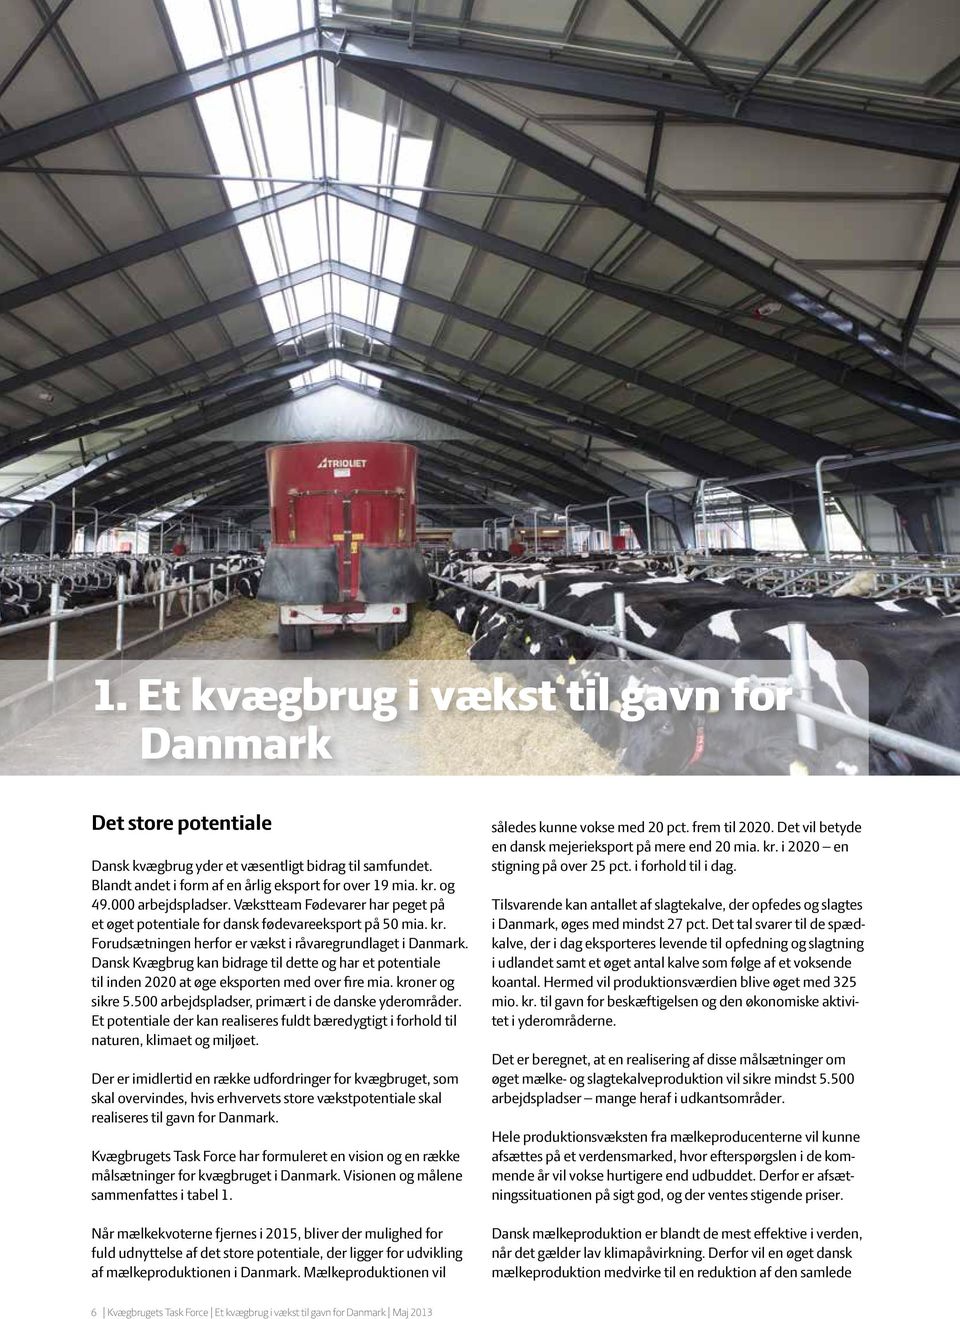 Dansk Kvægbrug kan bidrage til dette og har et potentiale til inden 2020 at øge eksporten med over fire mia. kroner og sikre 5.500 arbejdspladser, primært i de danske yderområder.